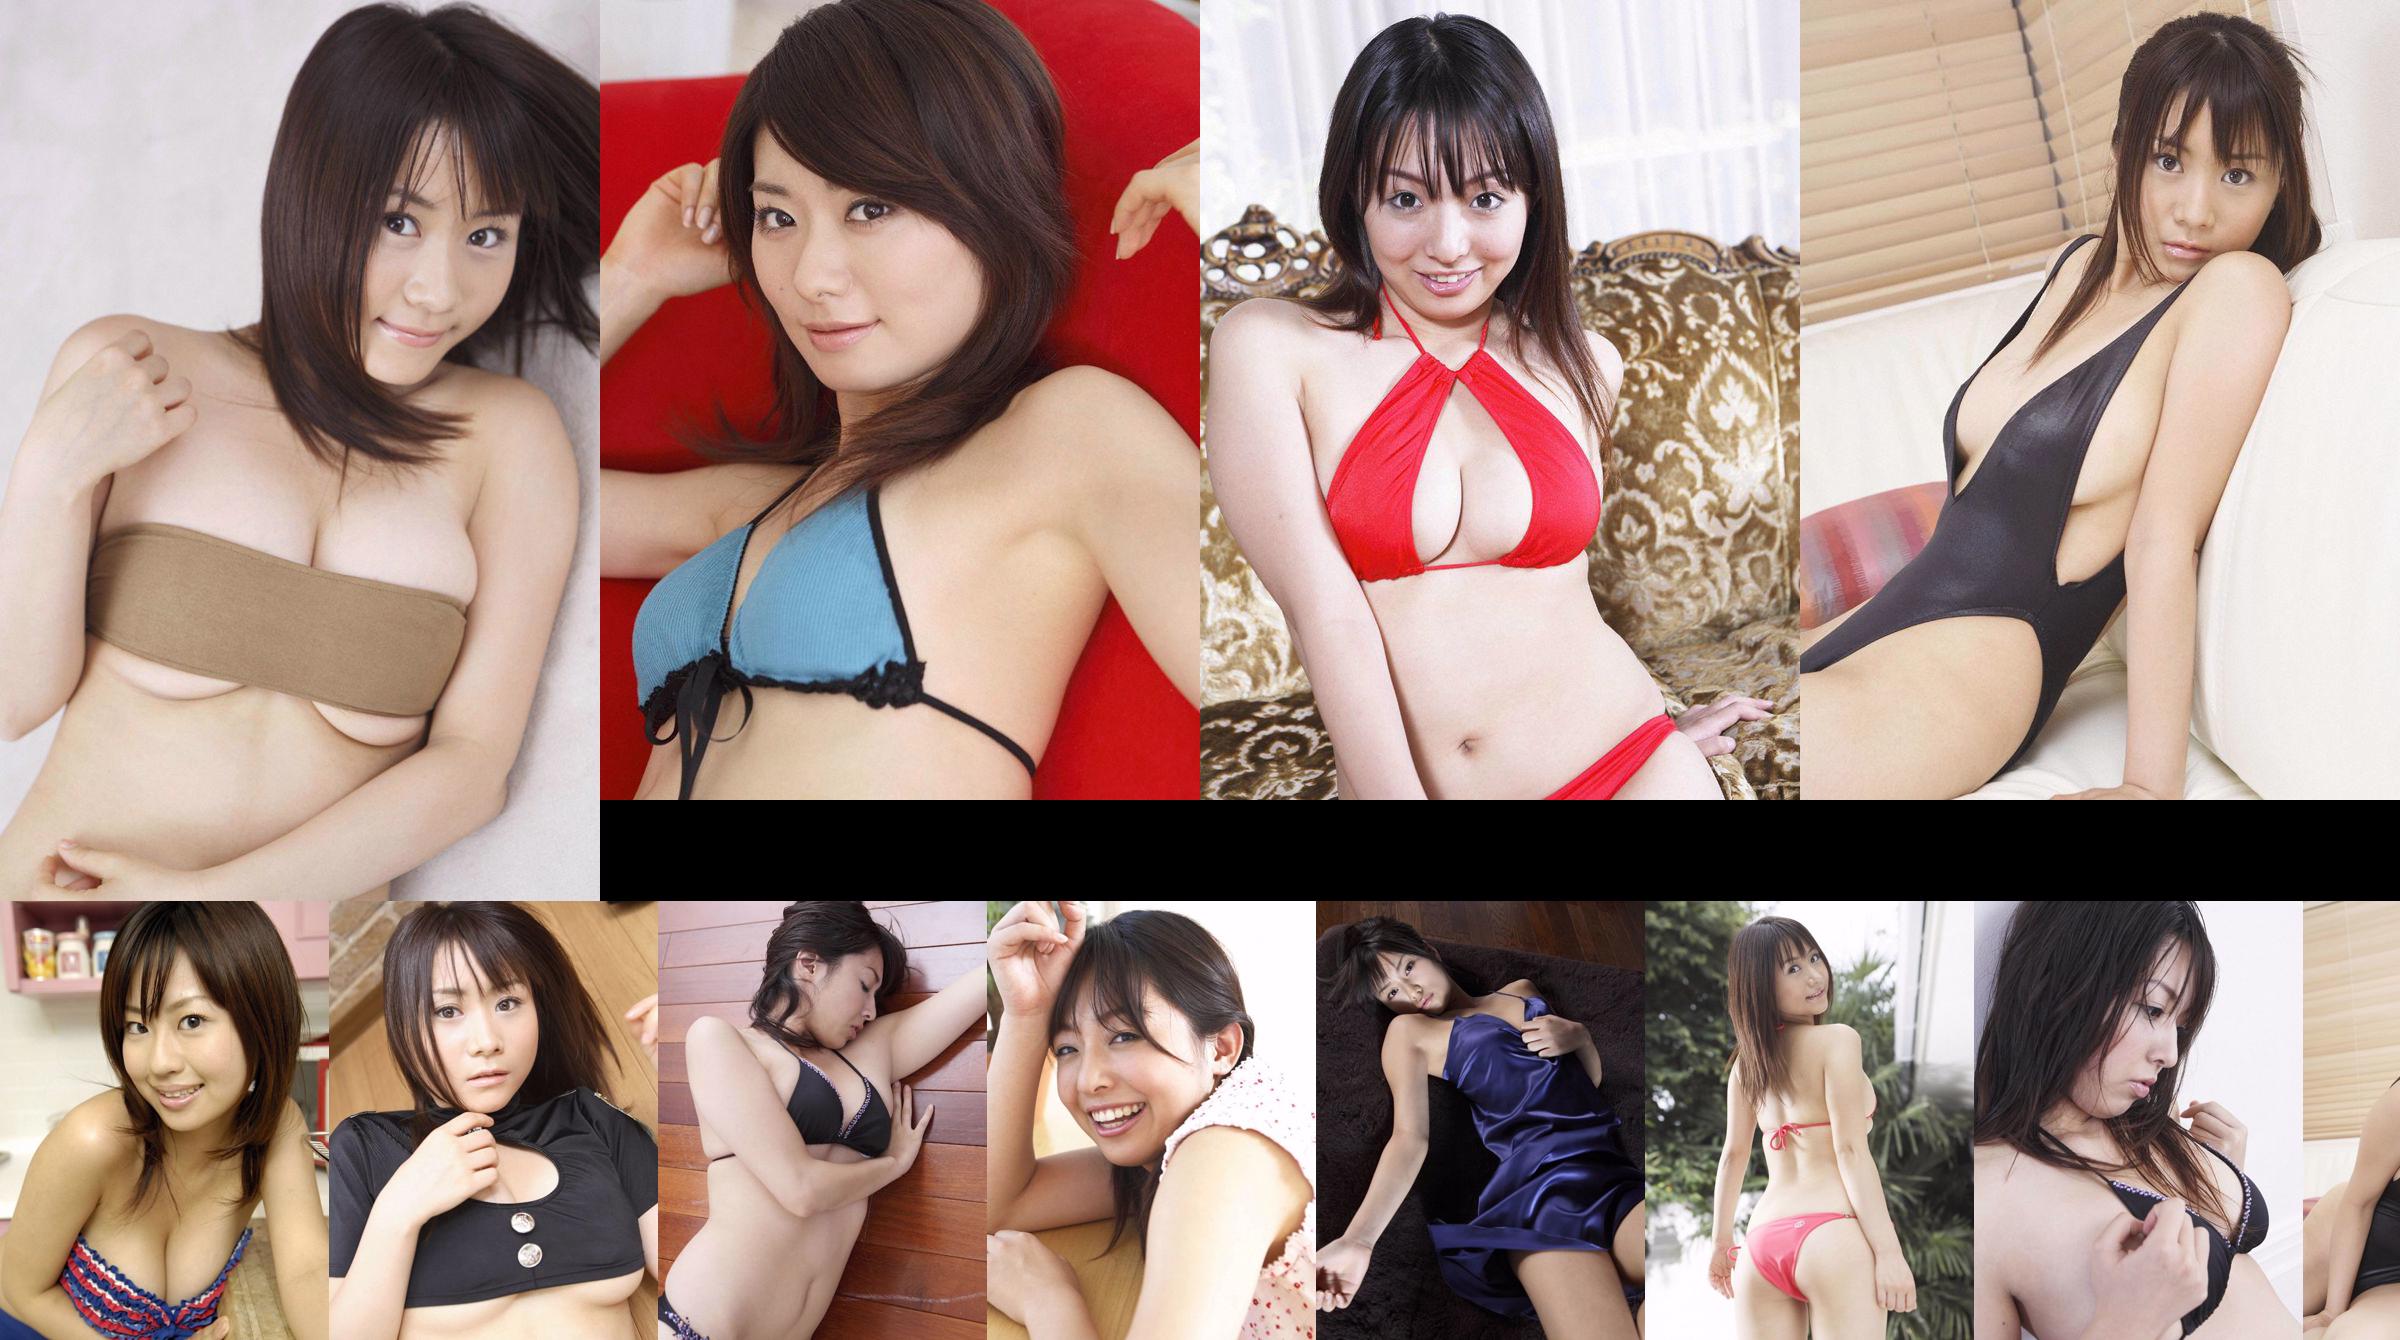 [Wanibooks] NO.37 Ai Arakawa, Hitomi Kaikawa, Hitomi Kitamura, Naomi I, Chii Matsuda Photo Collection No.f56ded Strona 1